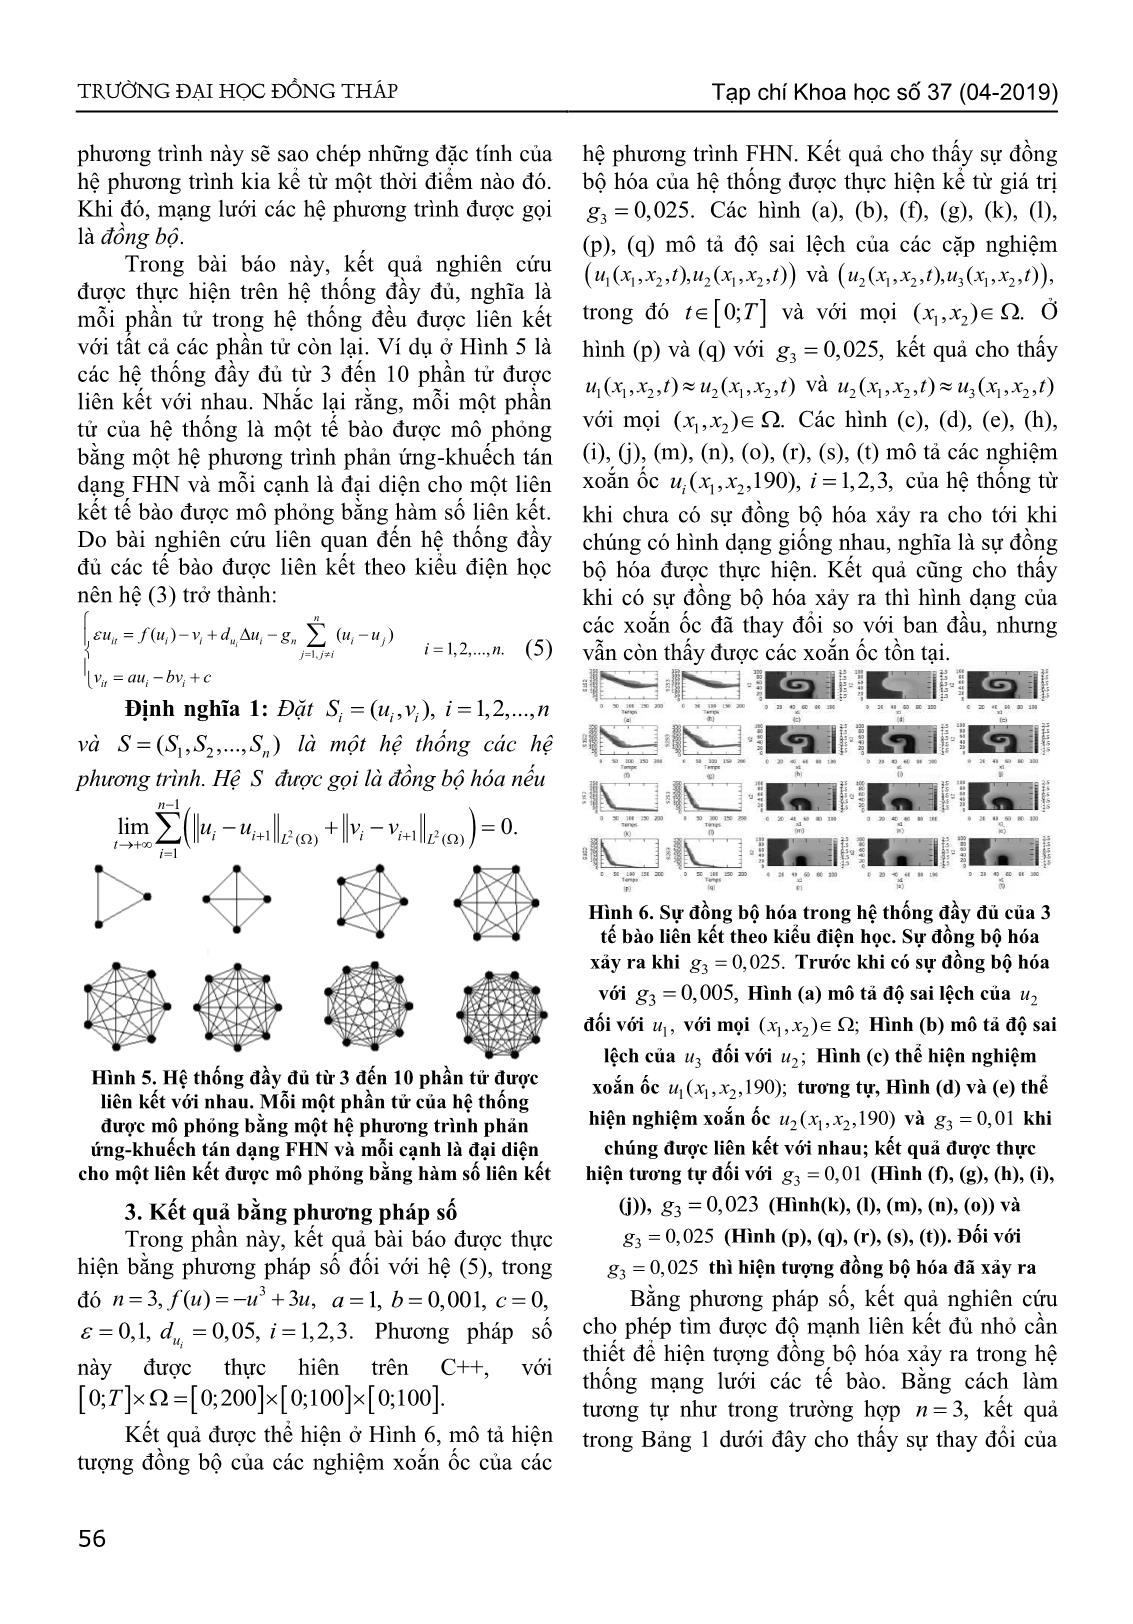 Sự đồng bộ hóa của hệ thống các phương trình phản ứng khuếch tán Fitzhugh-Nagumo có nghiệm dạng xoắn ốc trang 3